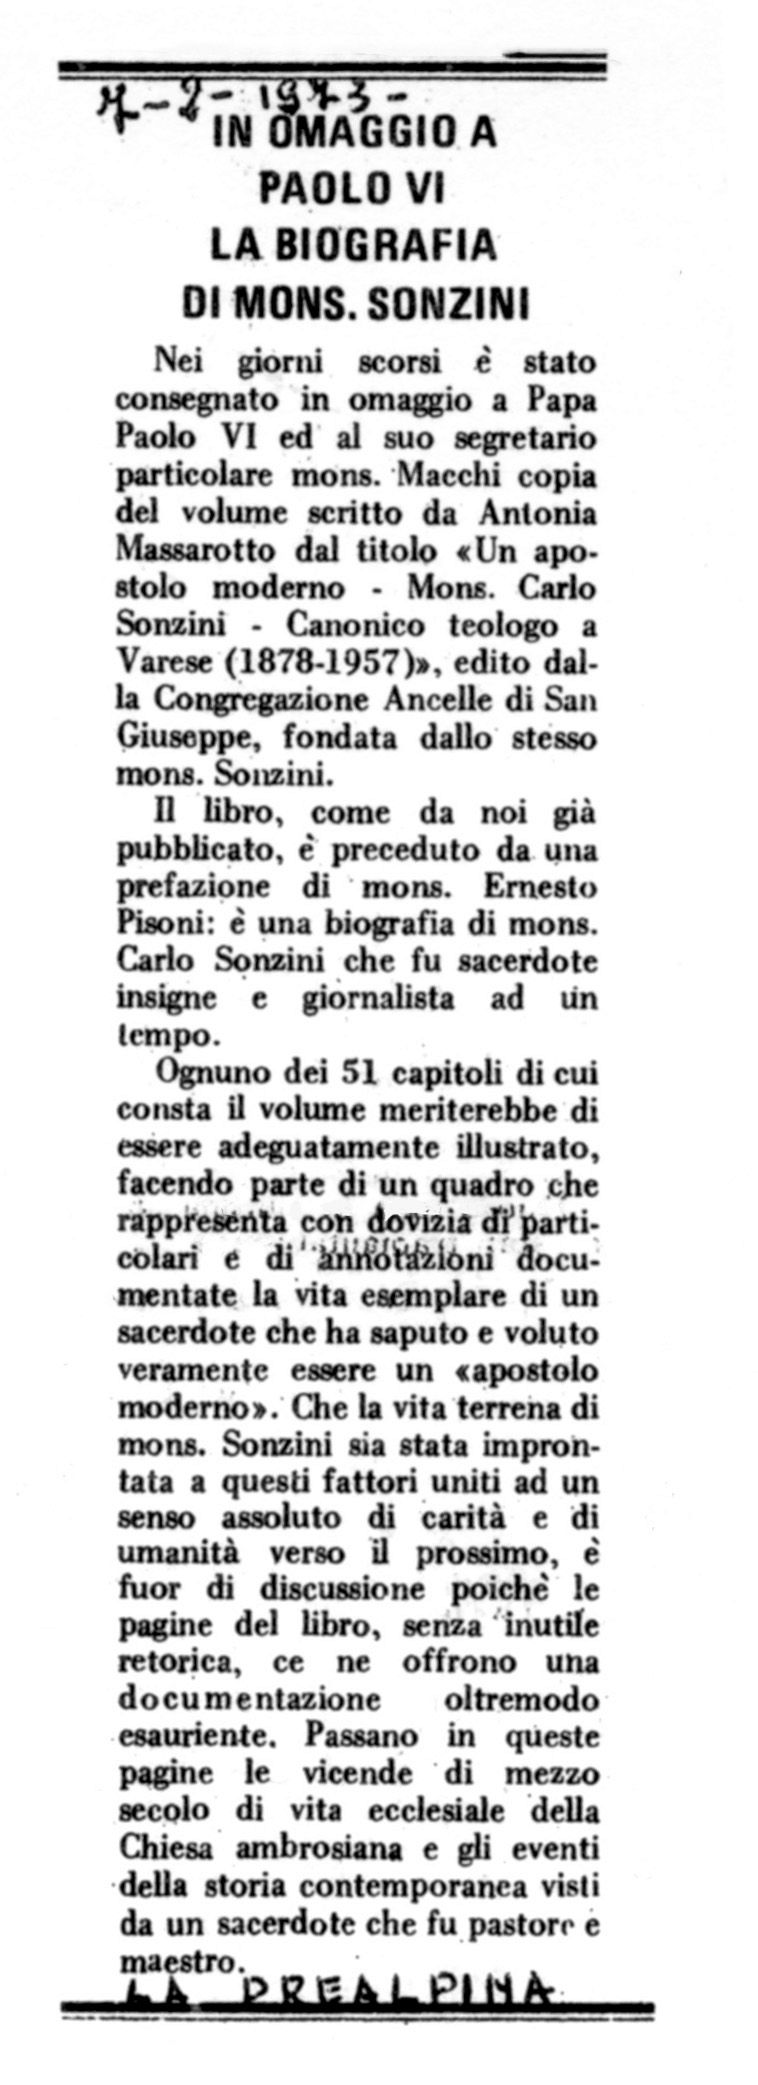 In omaggio a Paolo VI la biografia di mons. Sonzini